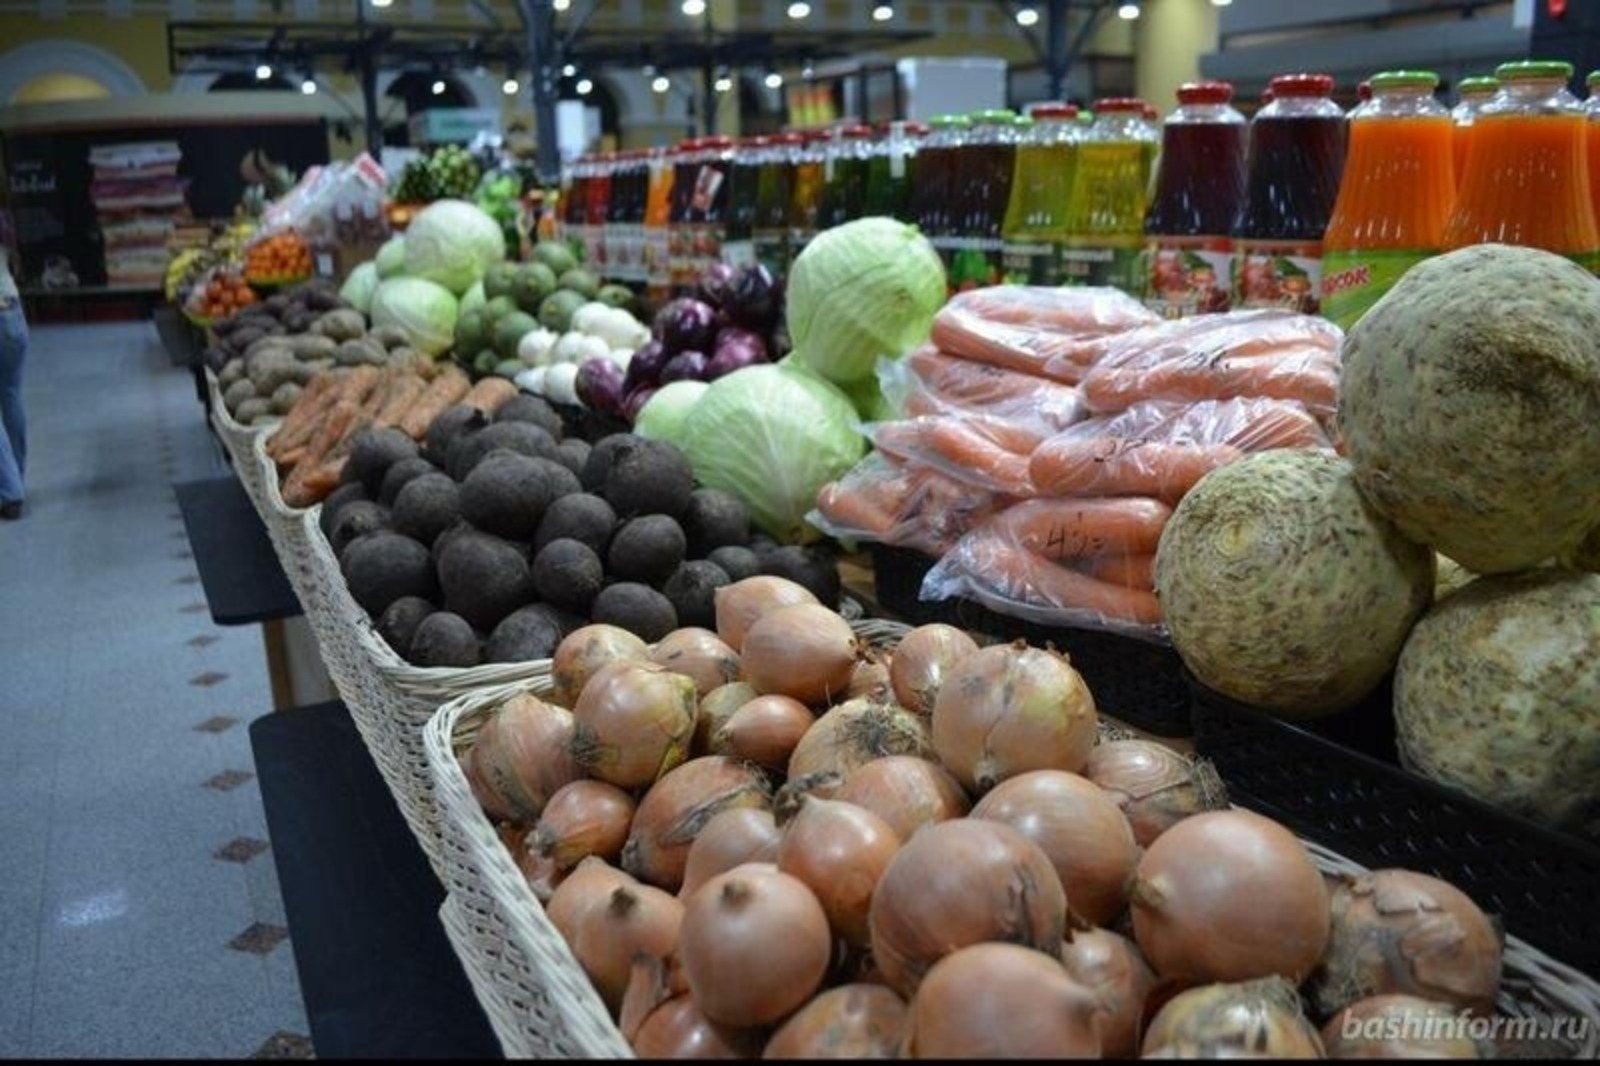 В Башкортостане многие из наиболее подорожавших продовольственных товаров начали дешеветь